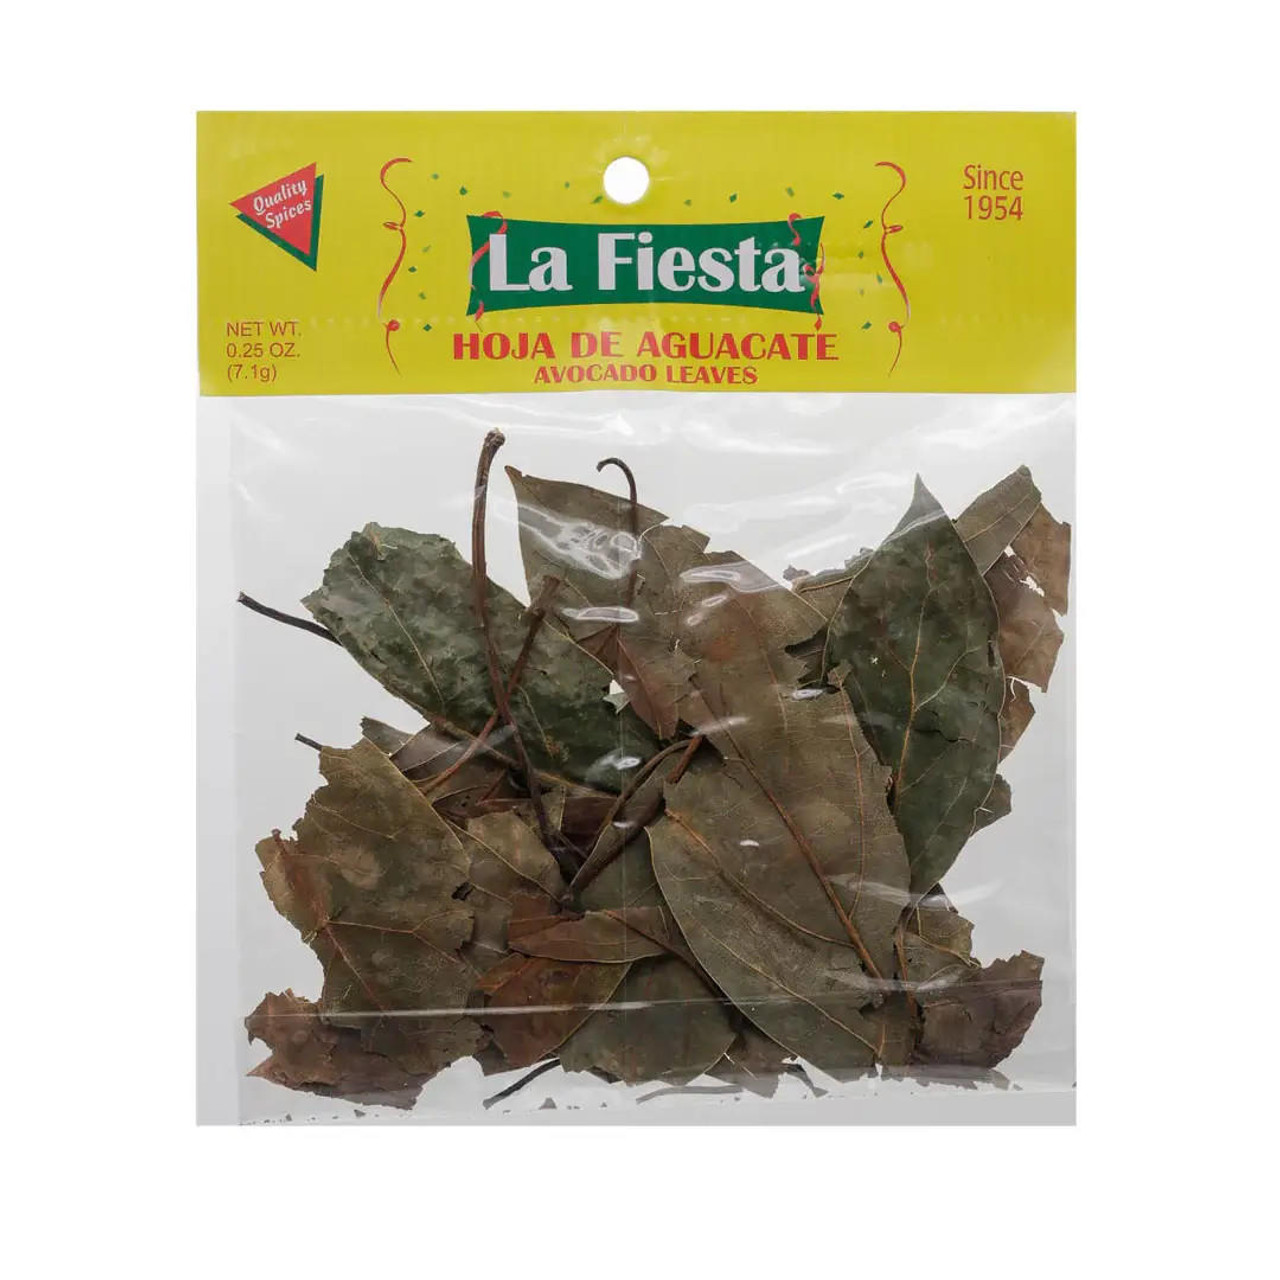  La Fiesta Hojas de Aguacate / Avocado Leaves 0.25 oz (12-Case) - La Fiesta Hojas de Aguacate Avocado Leaves 7g 